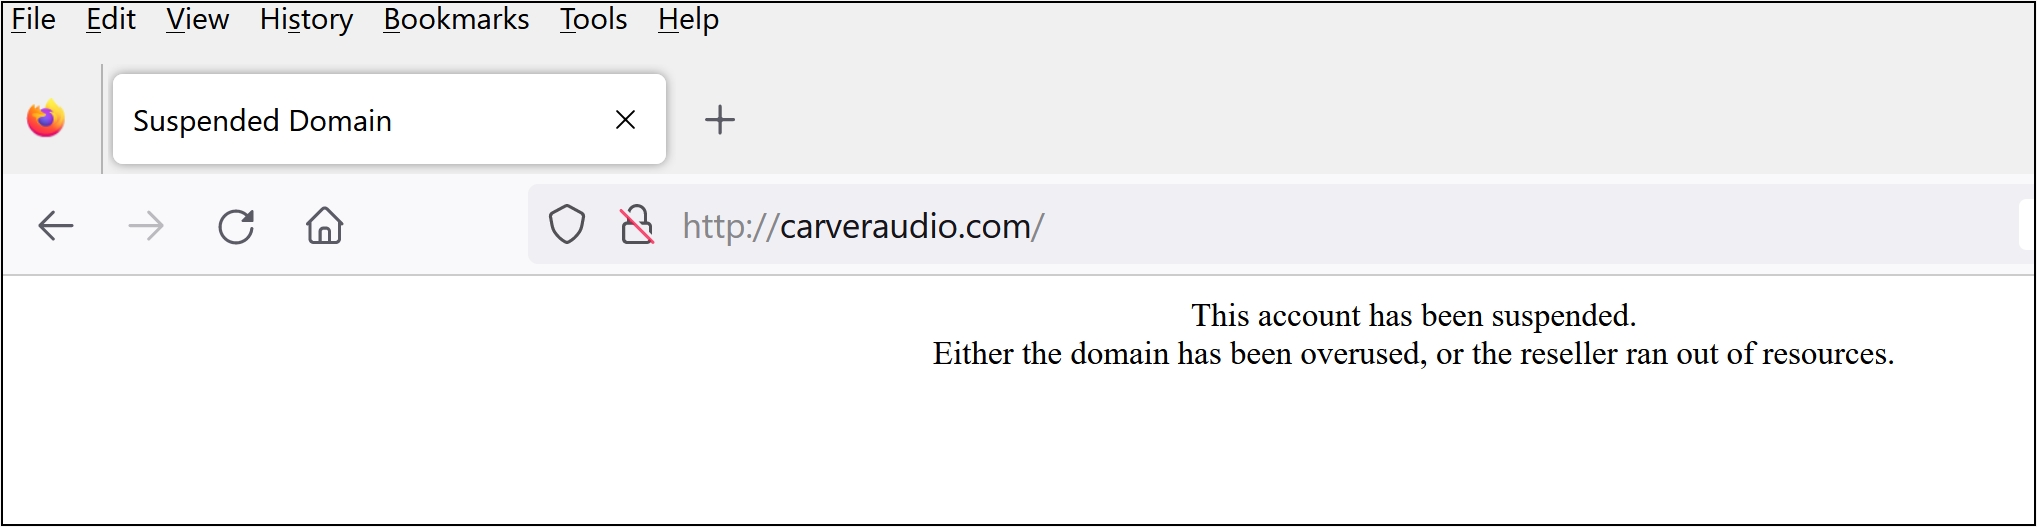 Carveraudio_website.jpg